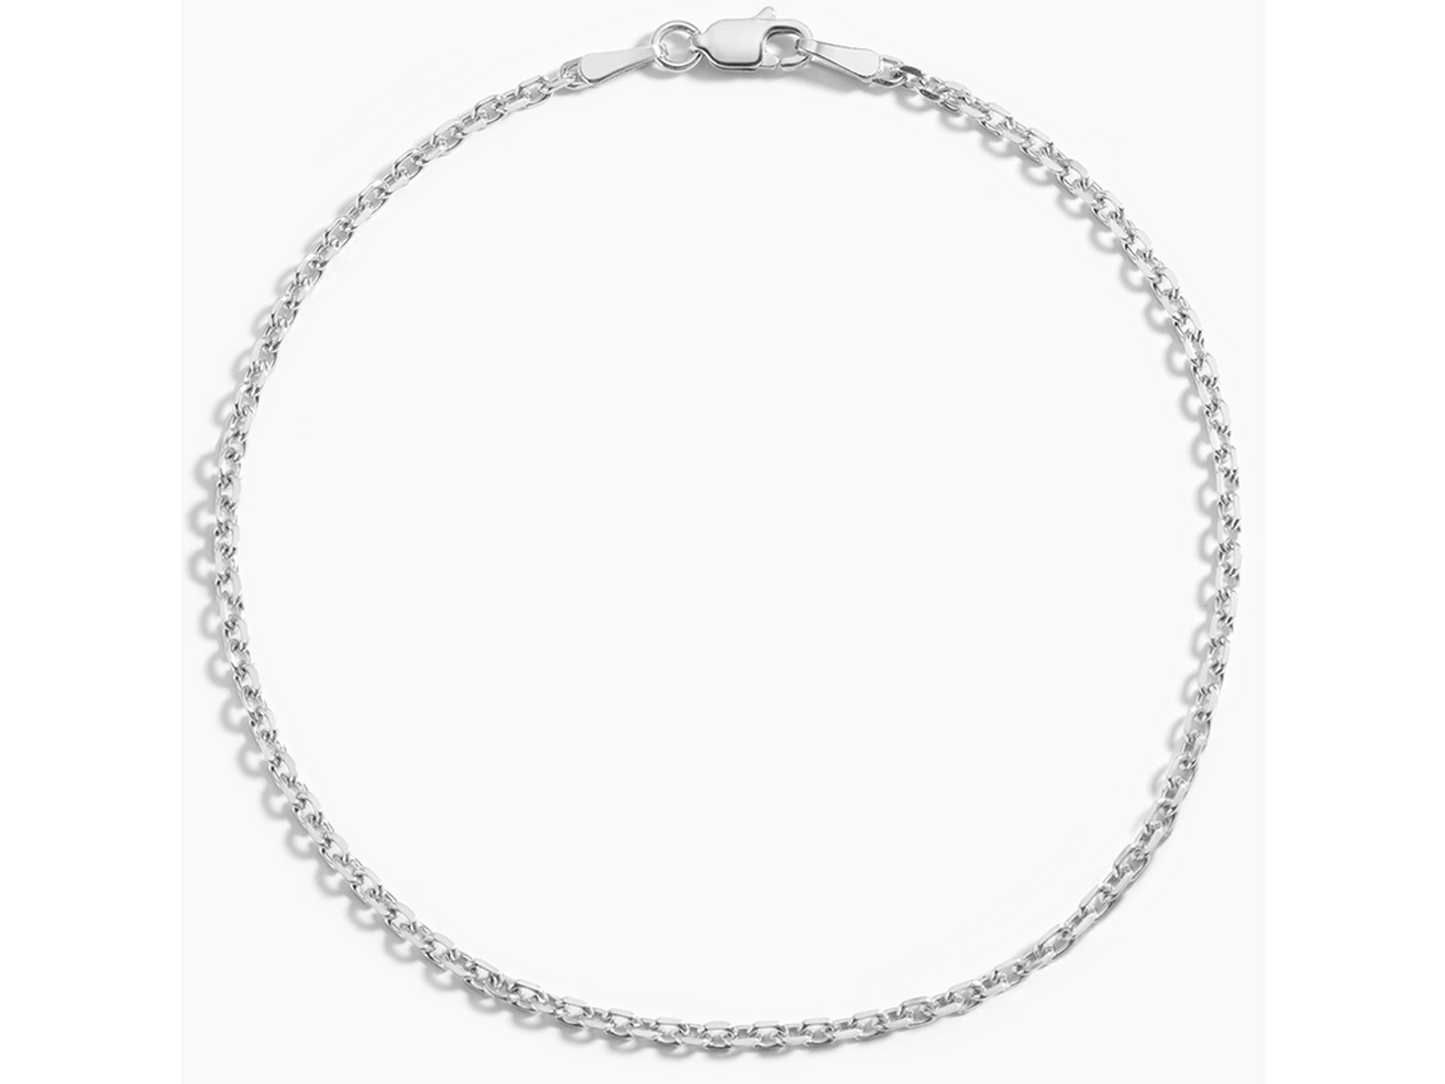 Diamond Cut Cable Chain Silver Bracelet